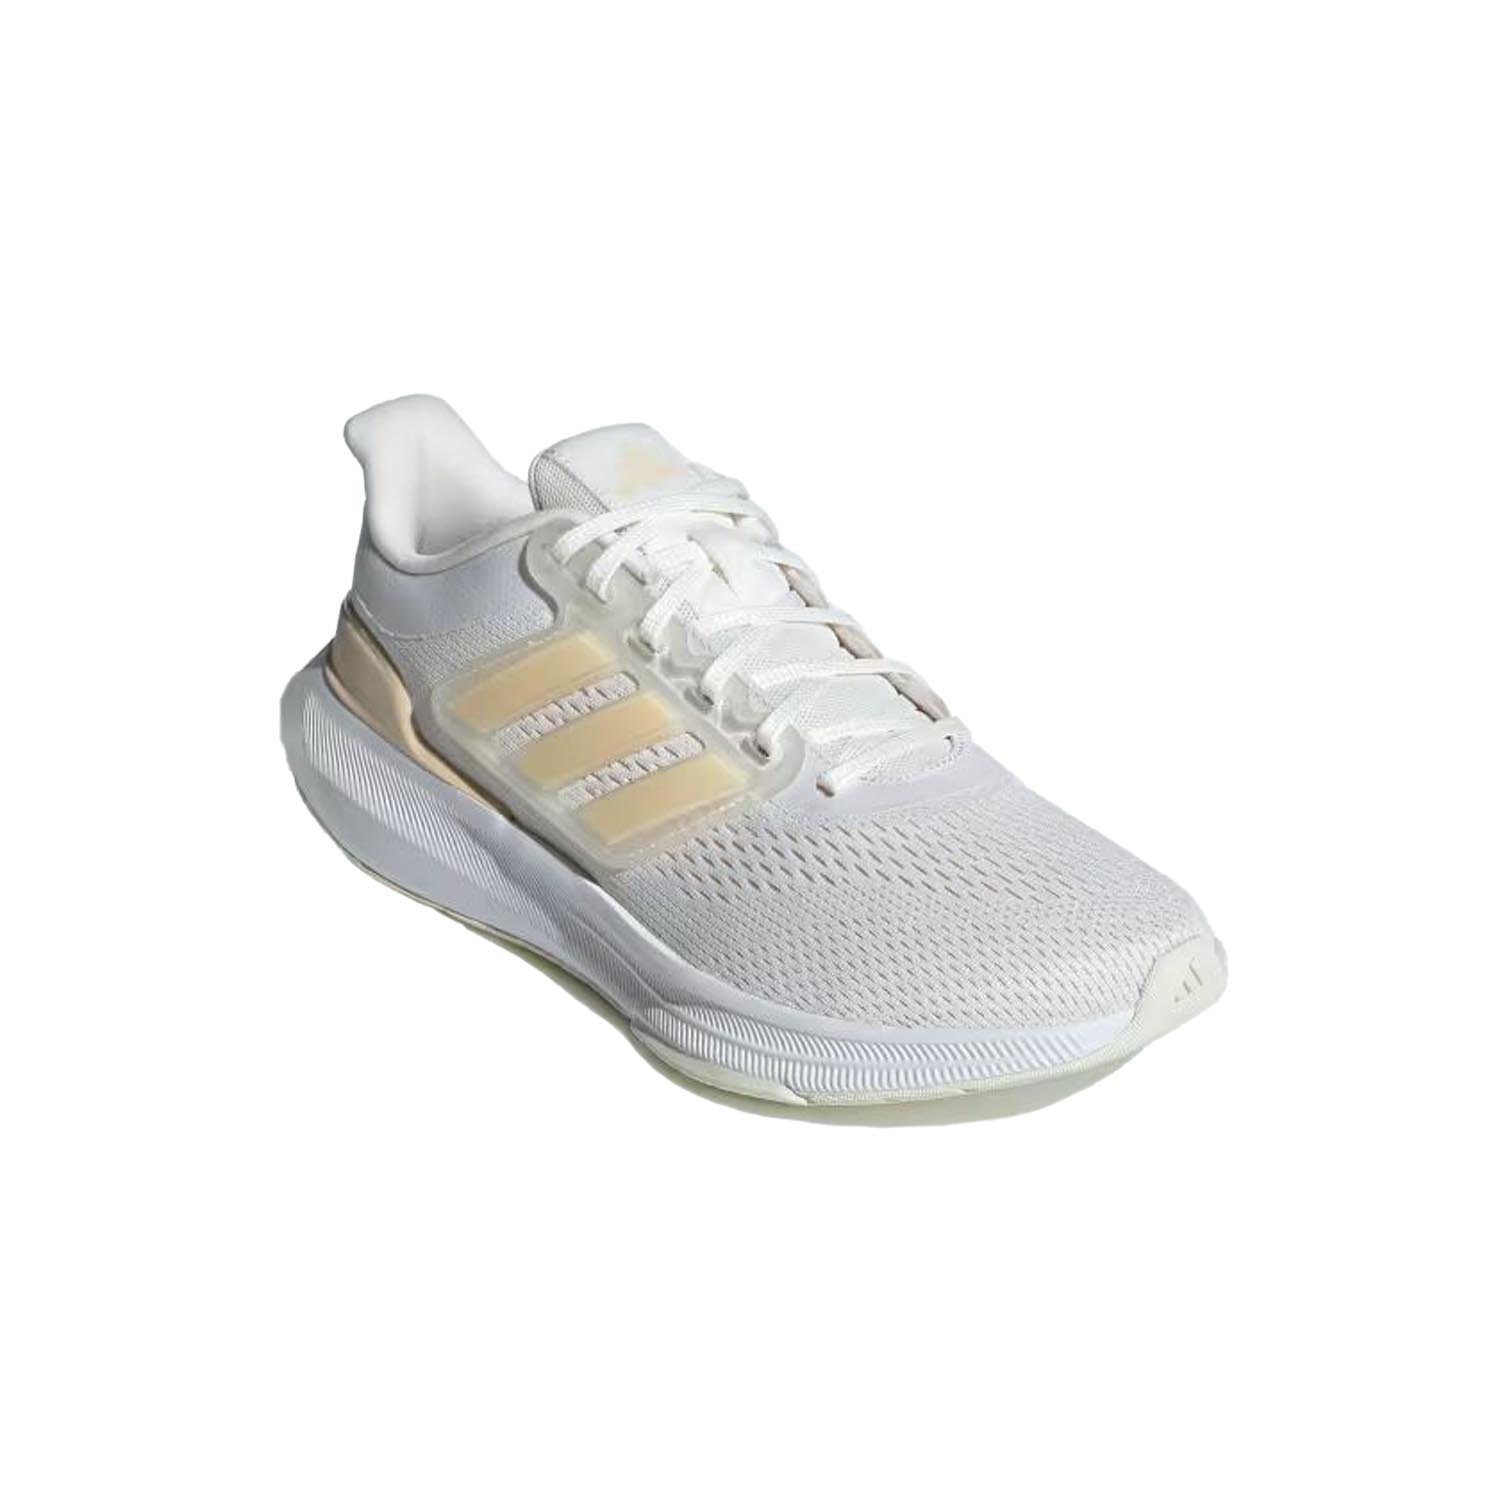 Adidas Ultrabounce Kadın Yol Koşu Ayakkabısı - Beyaz - 1